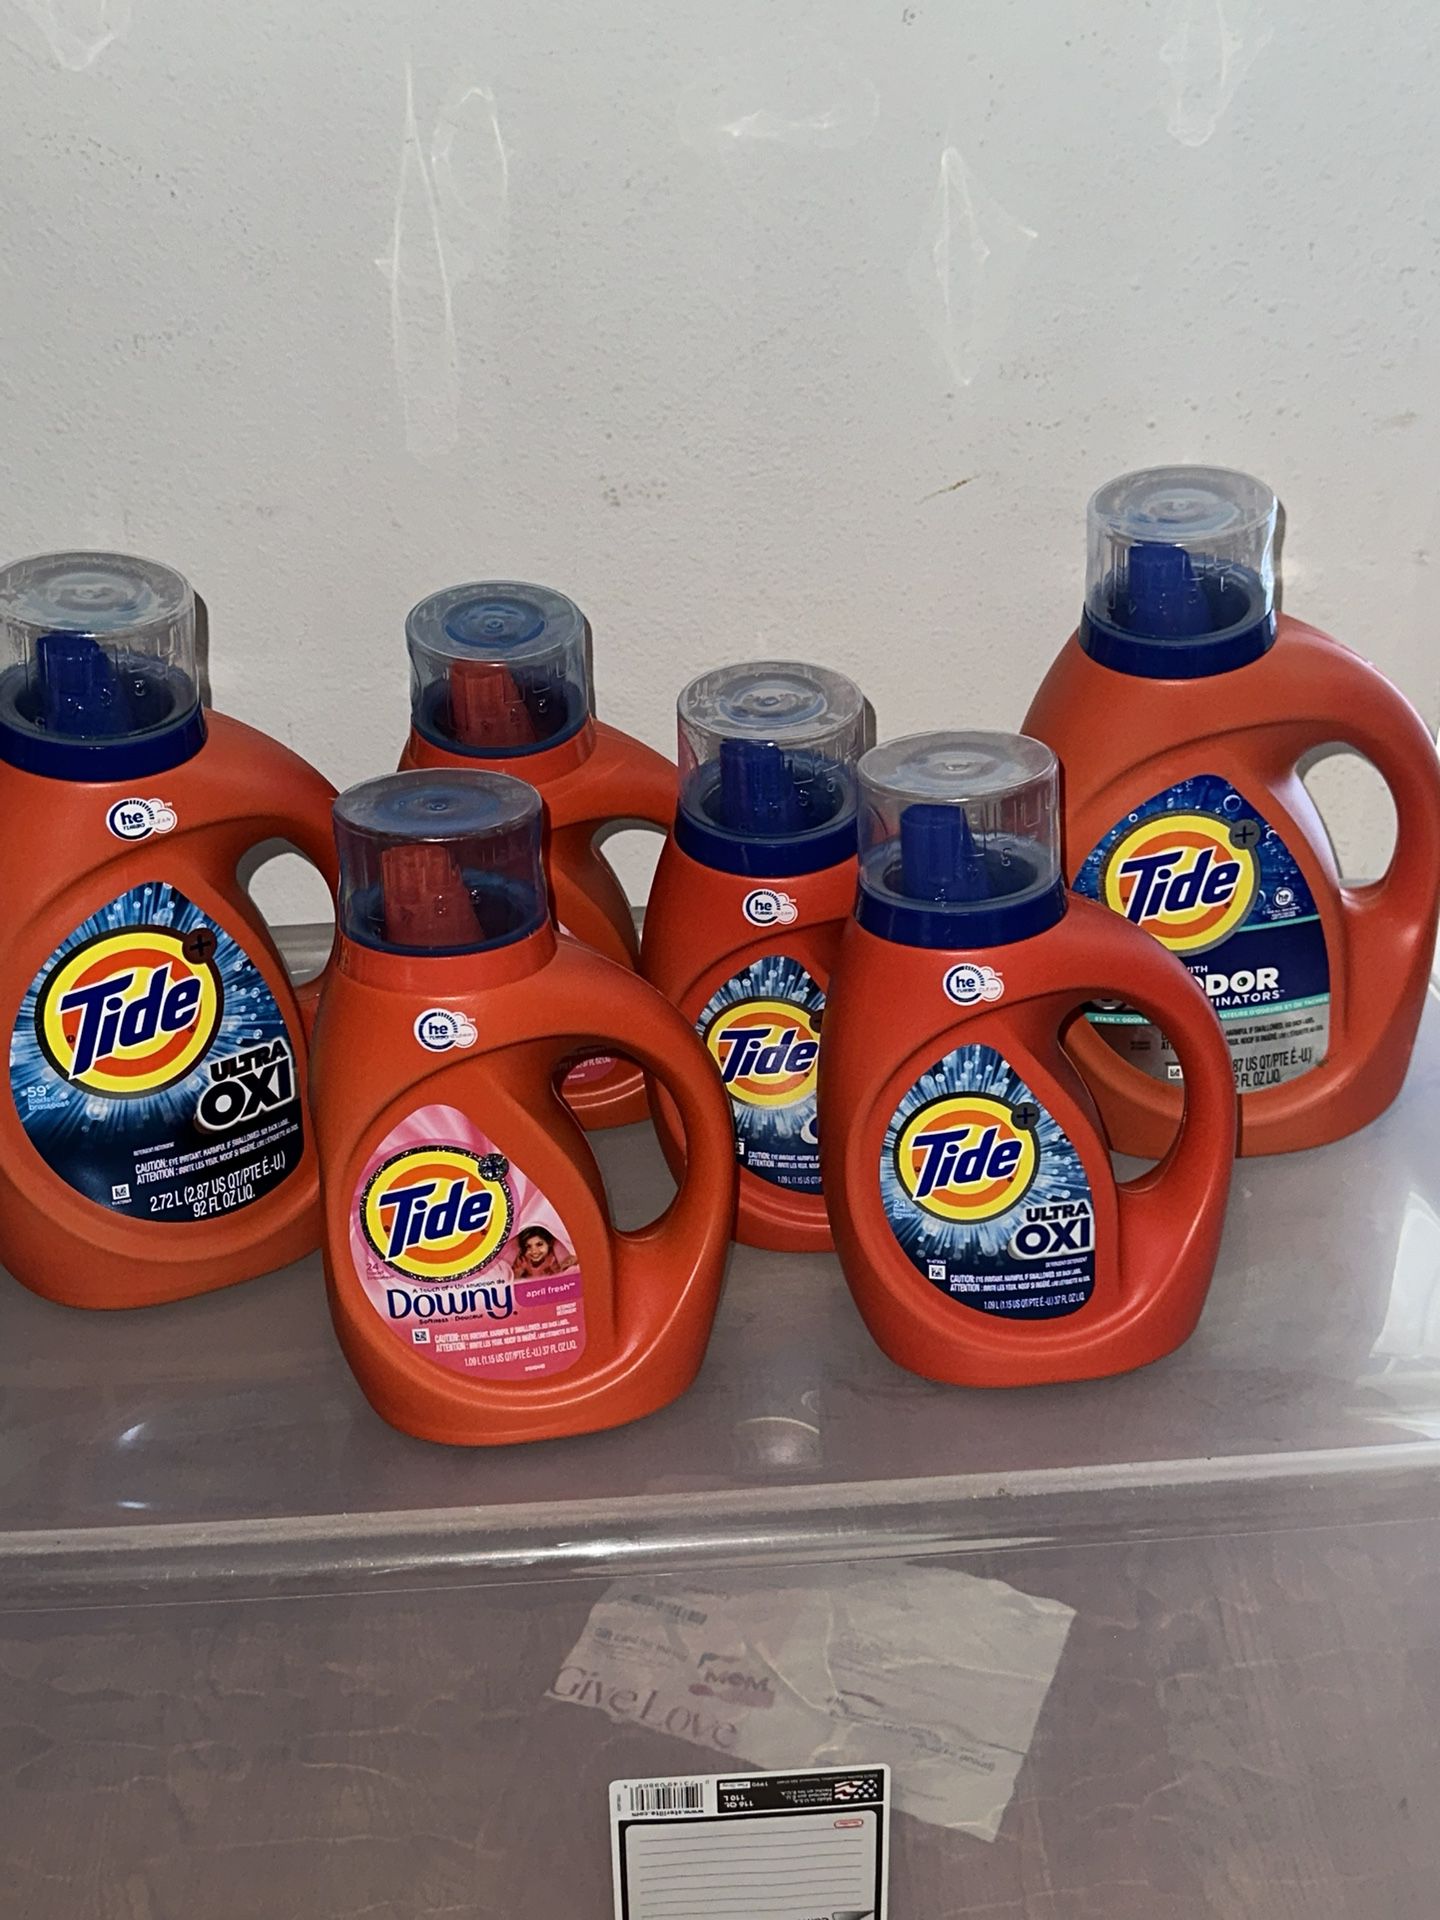 Tide bundle 6 detergents for 60$